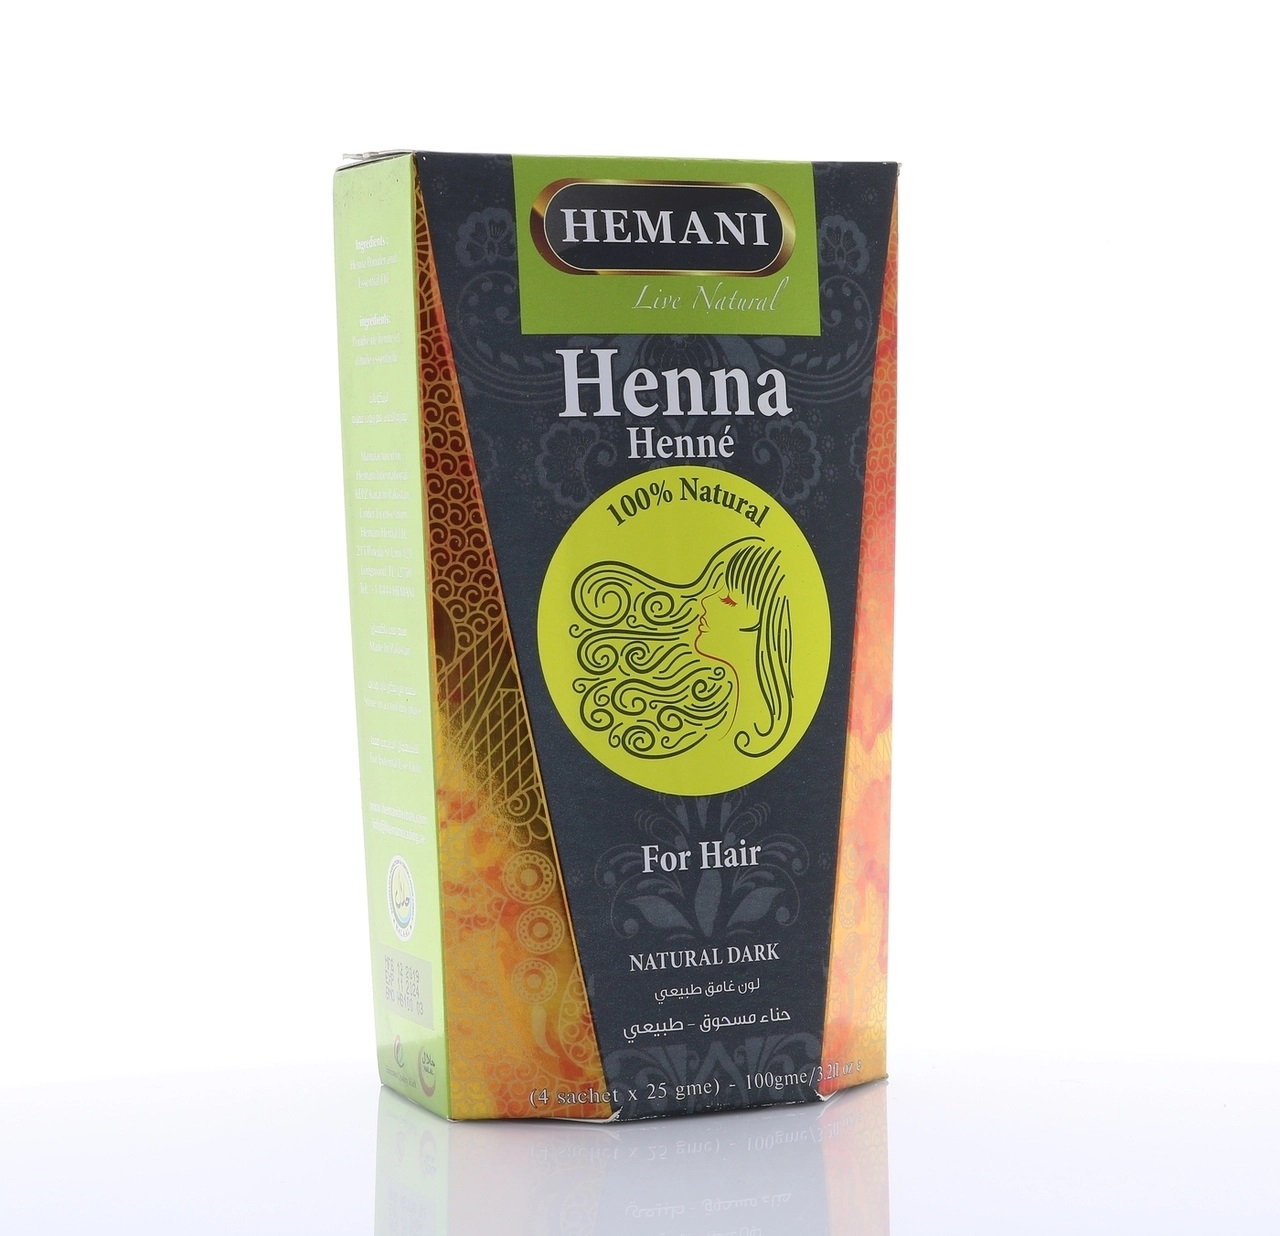 Hemani Henna Black 4x25g x 6